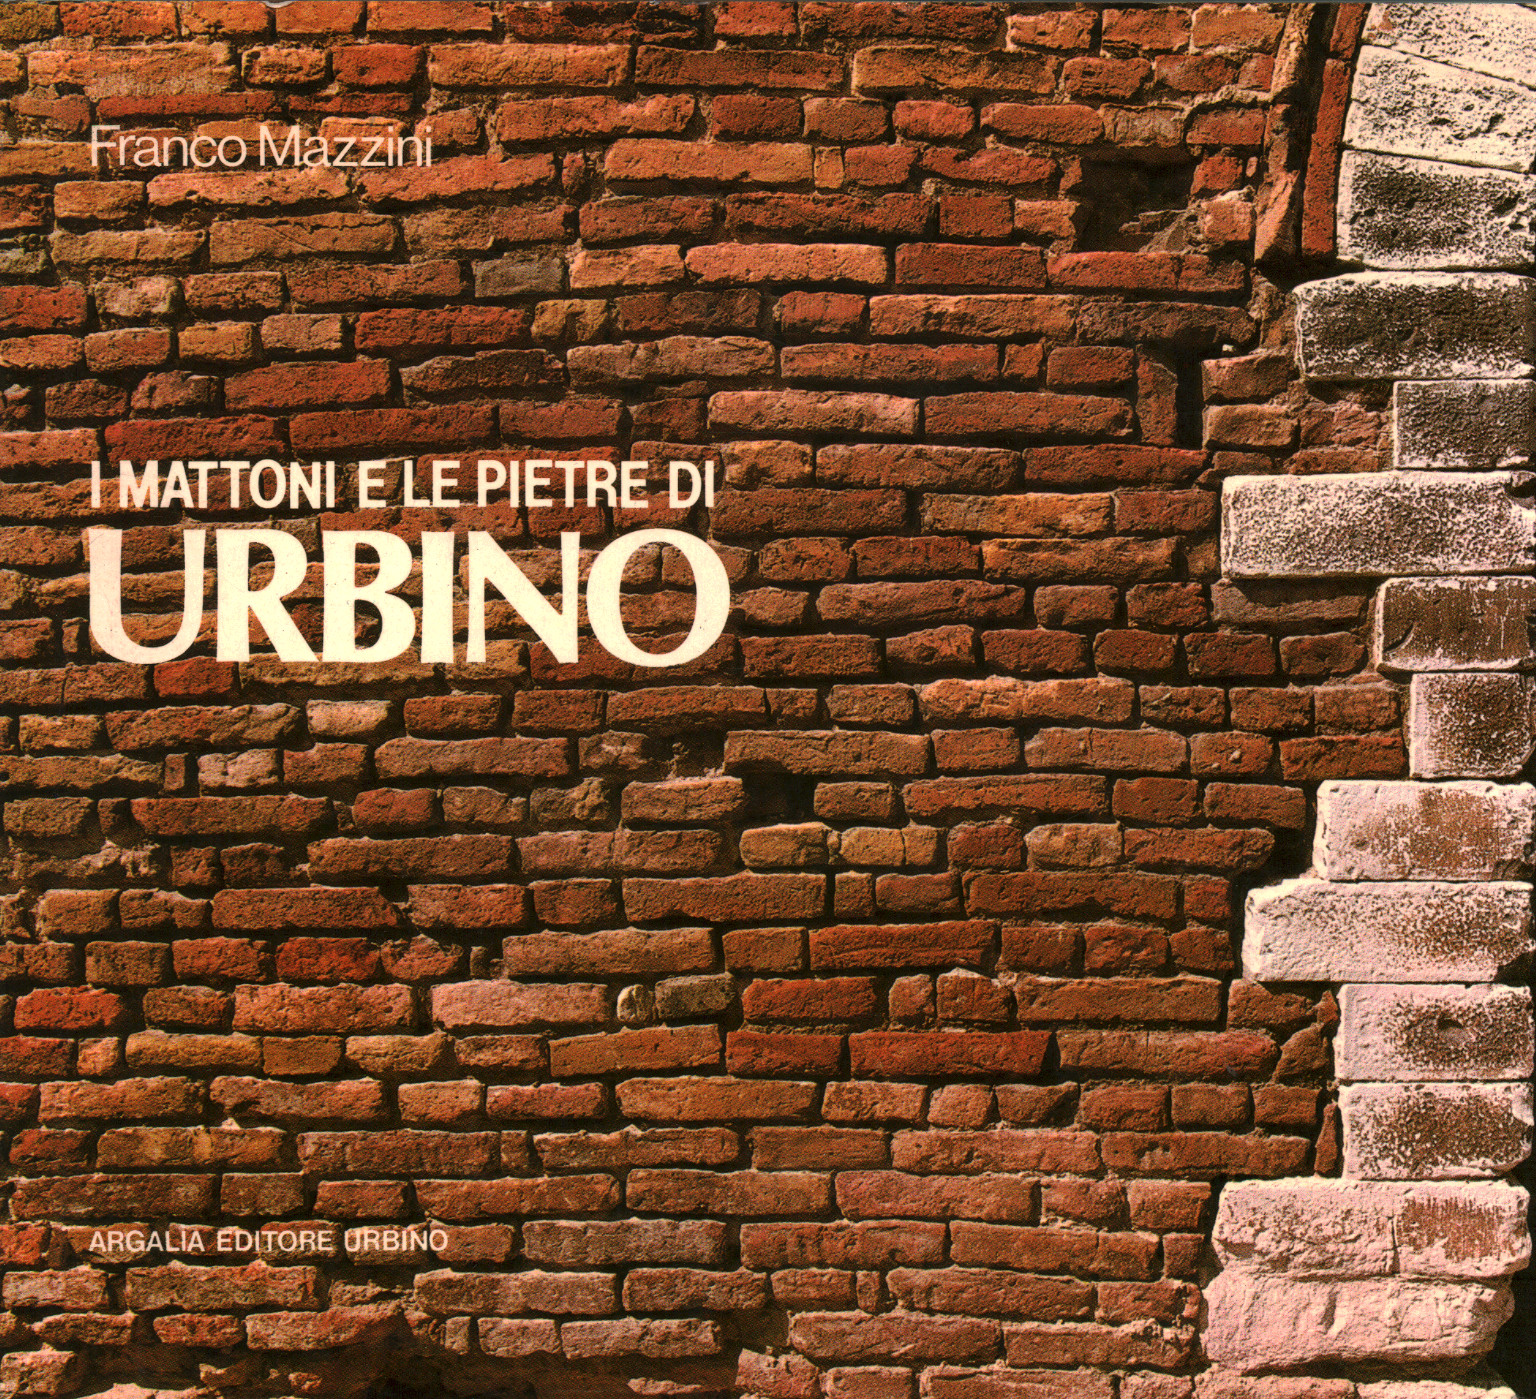 I mattoni e le pietre di Urbino, s.a.